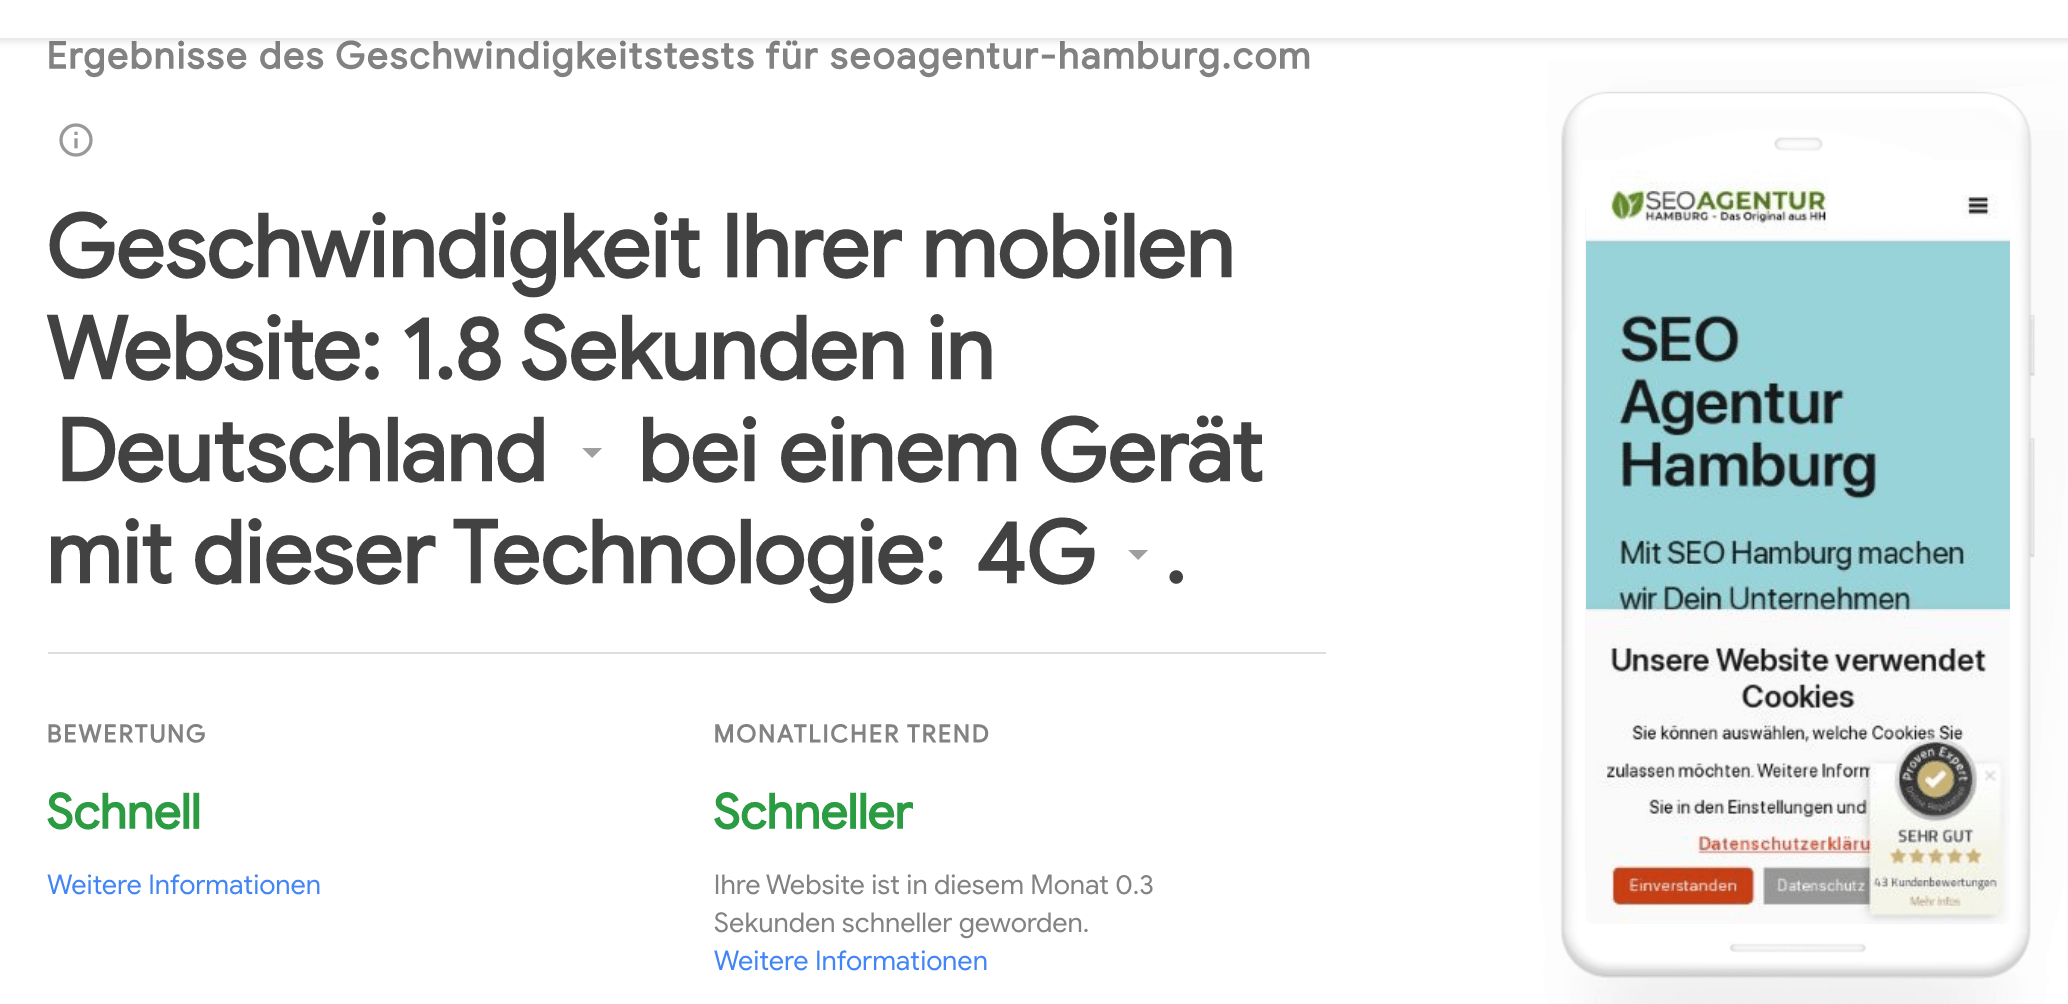 Der mobile Pagespeed der Website der SEO Agentur Hamburg unter einer 4G-Verbindung.